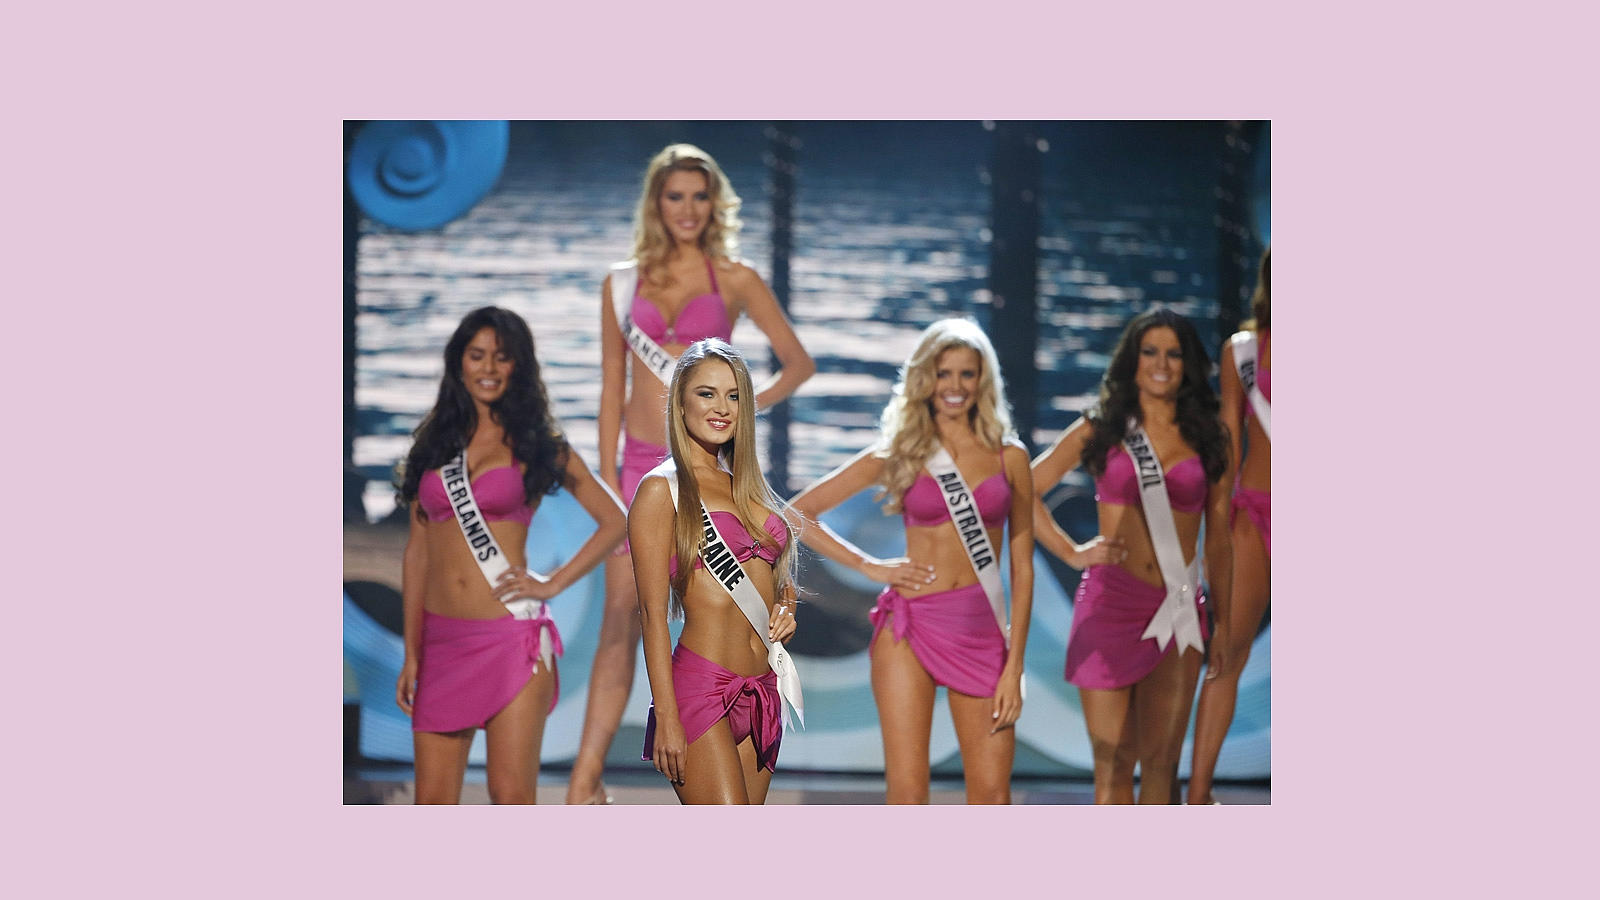 Miss Ucrania, en primer plano, en un momento del desfile en traje de baño junto a otras de las candidatas